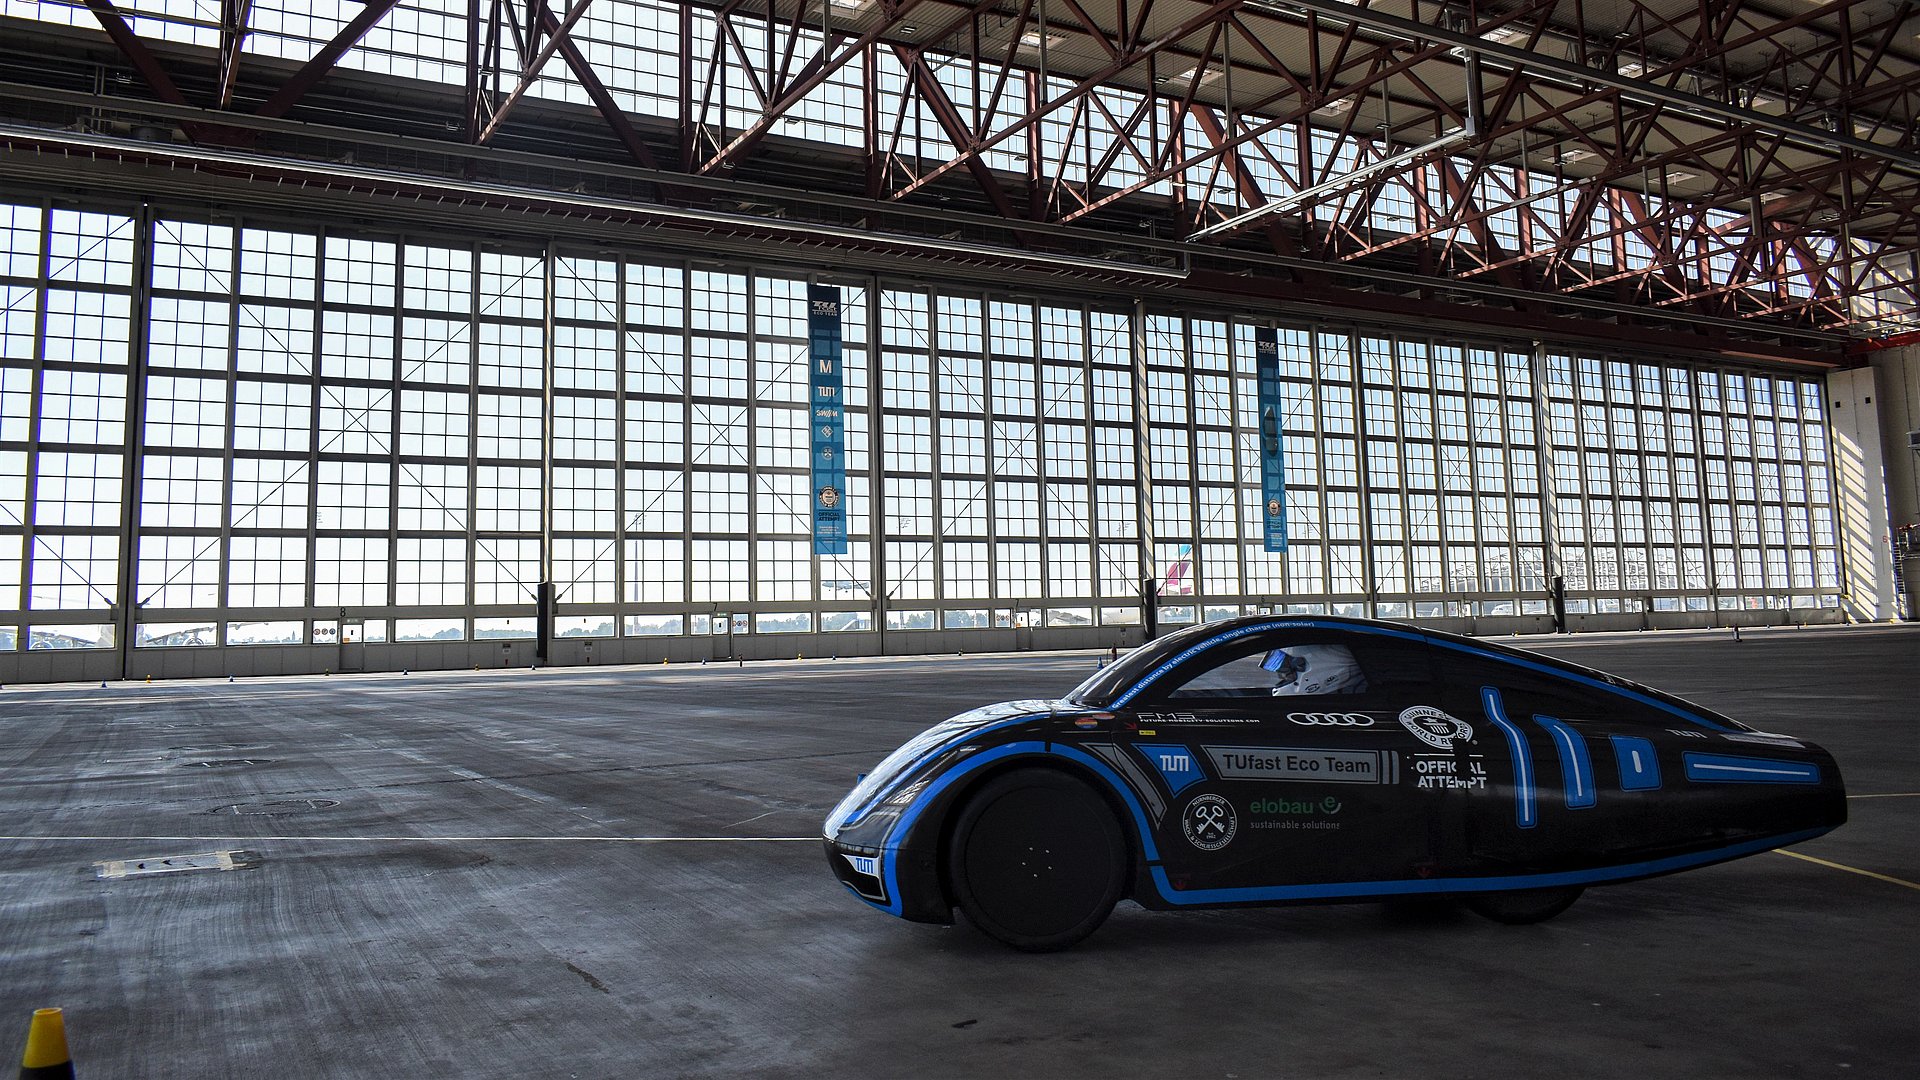 Un coche de competición conduce en un hangar de aviones para romper un récord mundial.